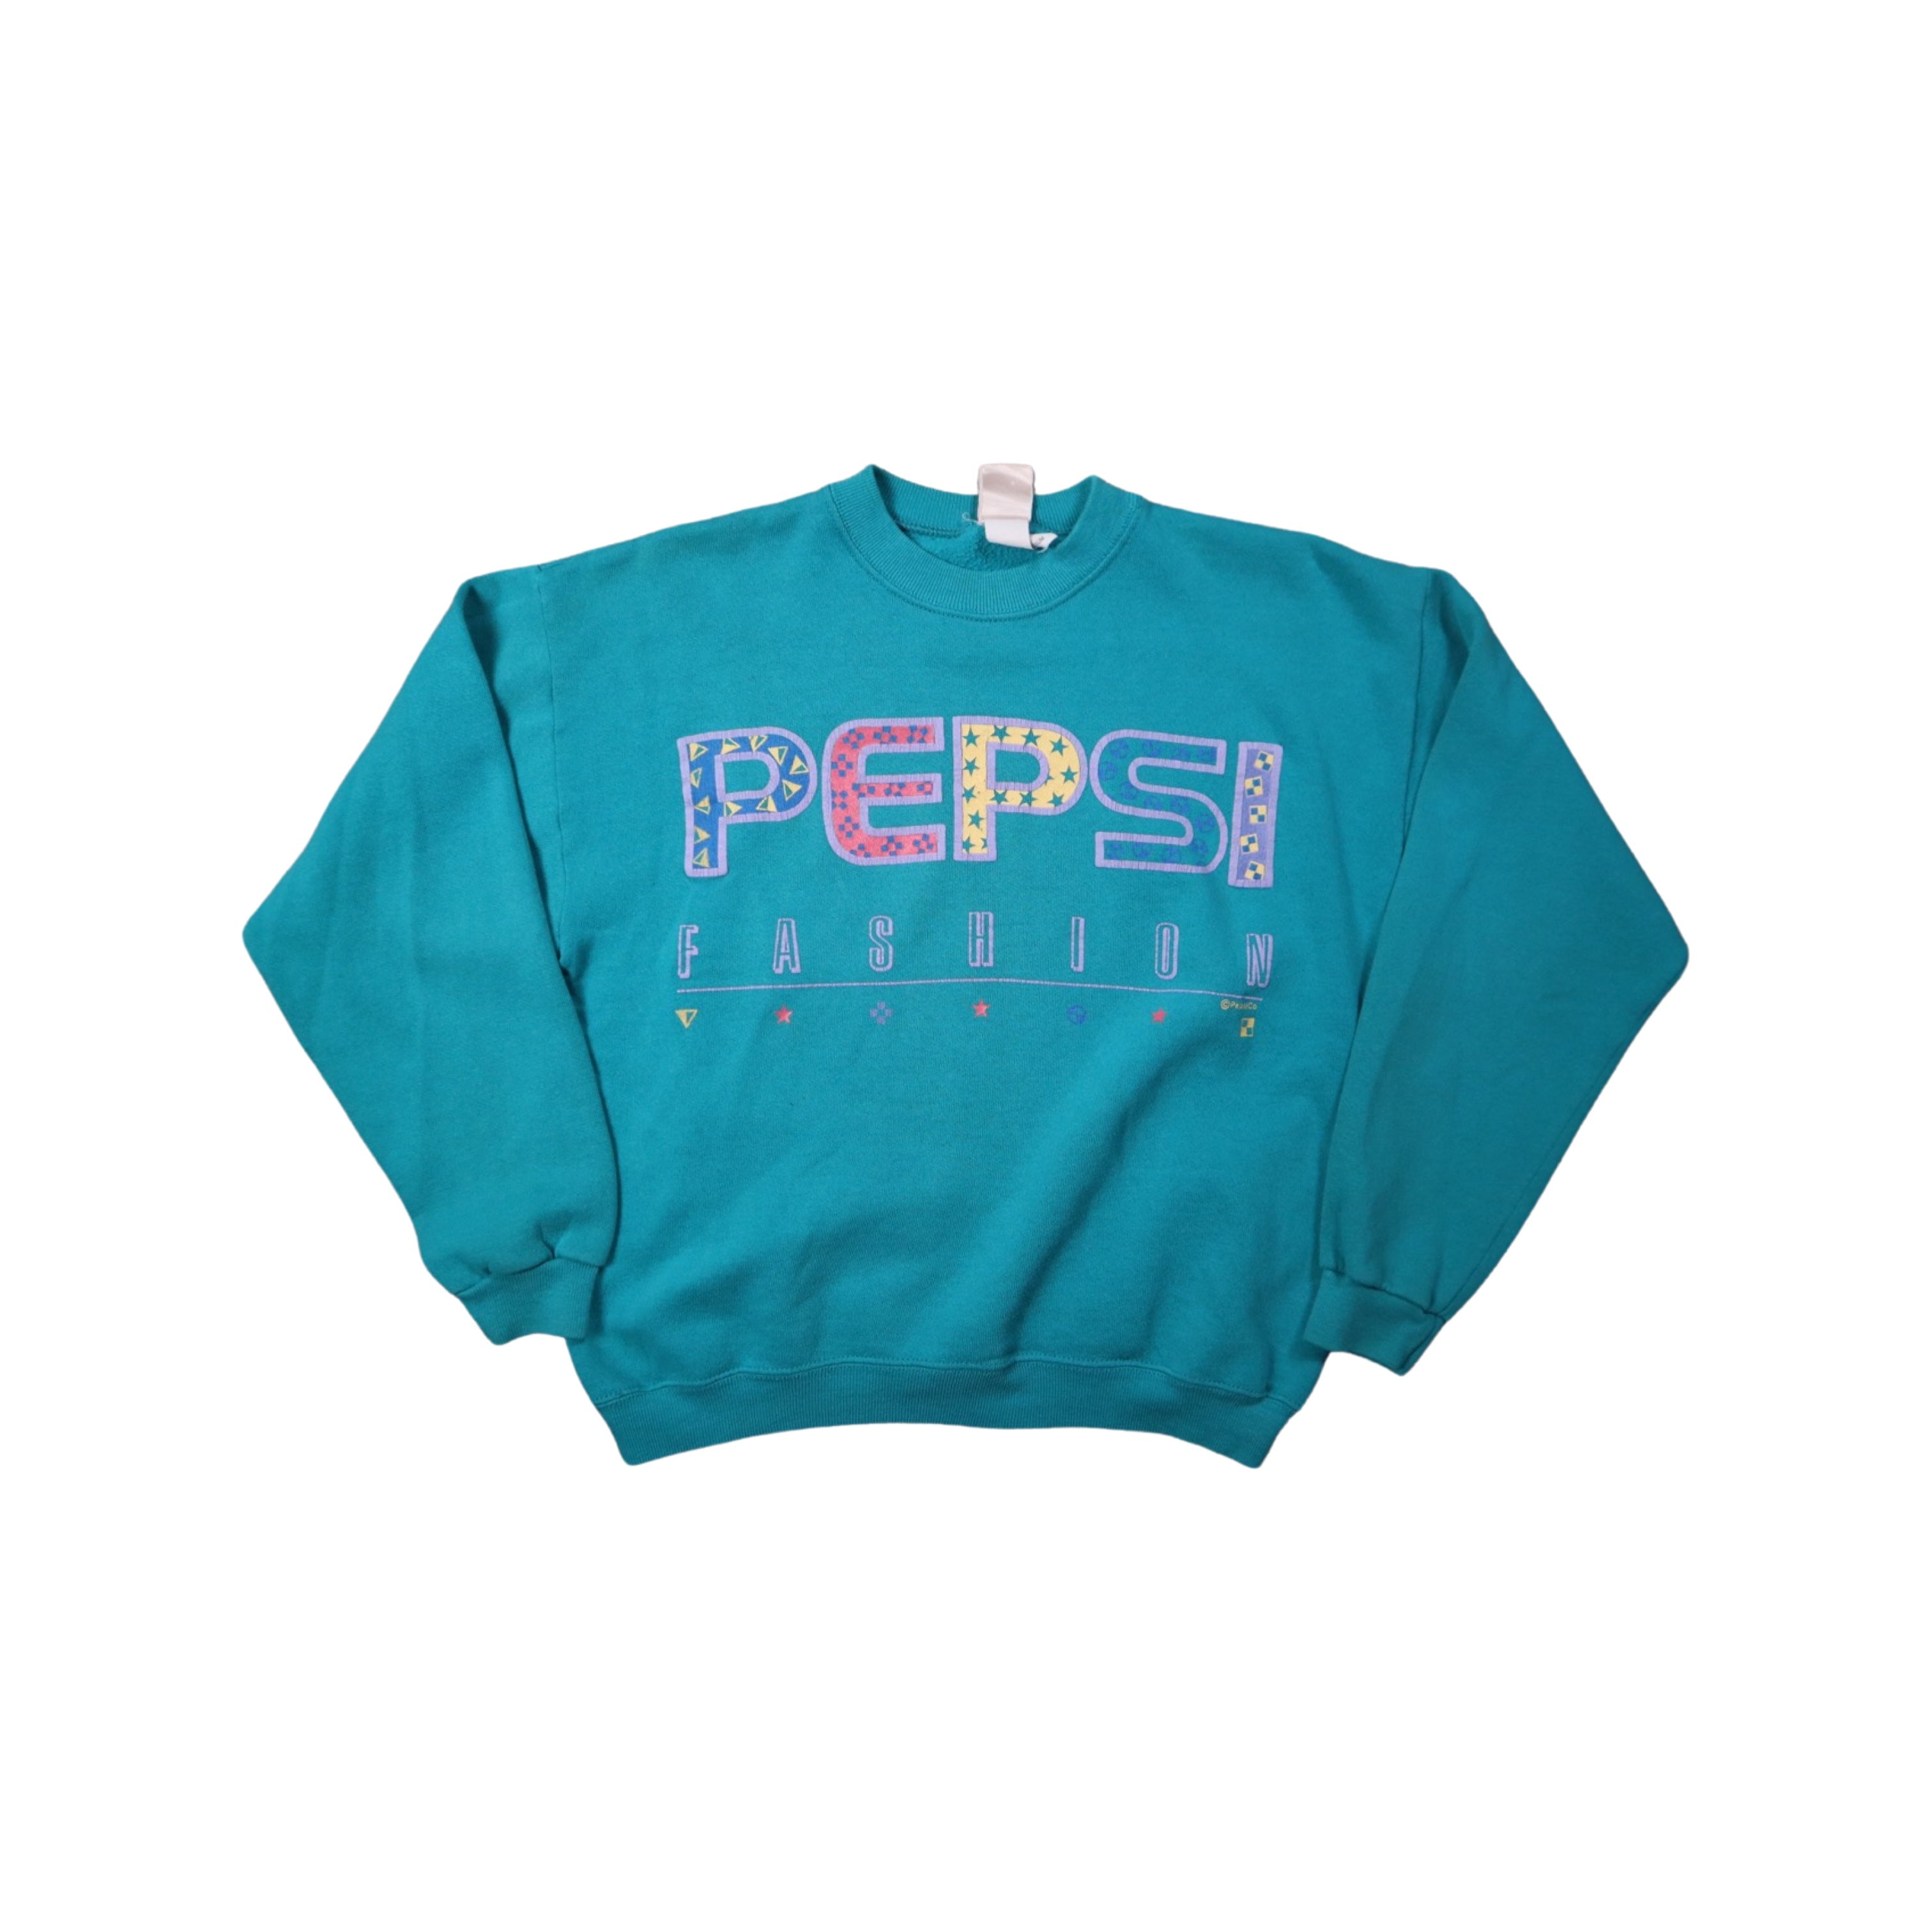 Pepsi Fashion 90s Sweater (Small)